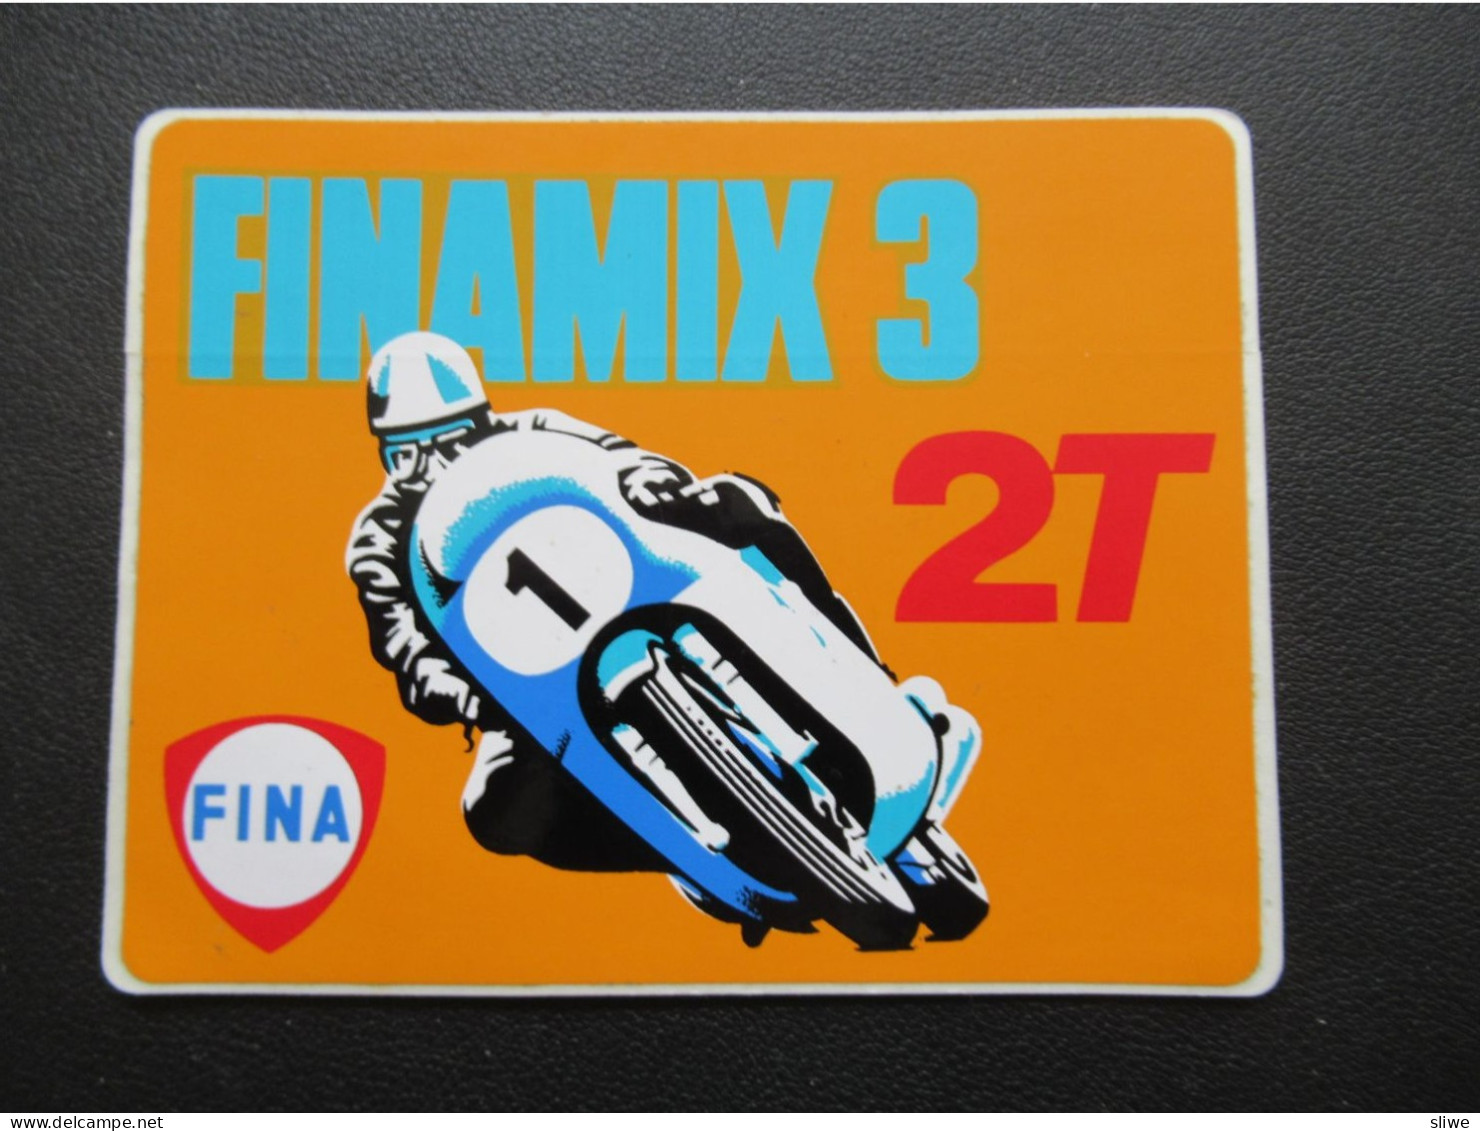 Sticker Finamix 3 - 2T - Aufkleber